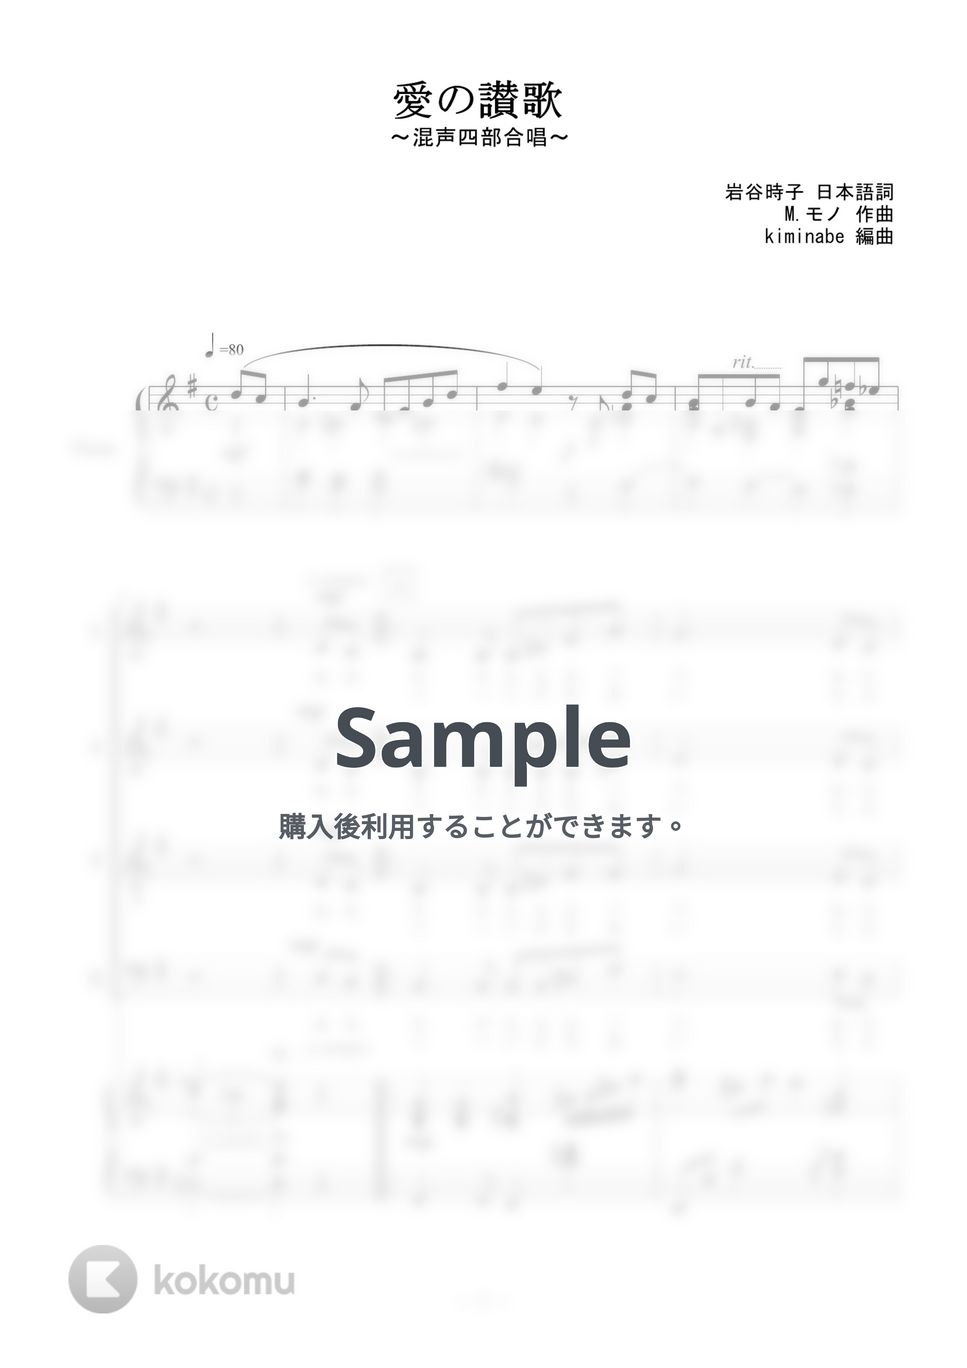 越路吹雪 - 愛の讃歌 (混声四部合唱) by kiminabe